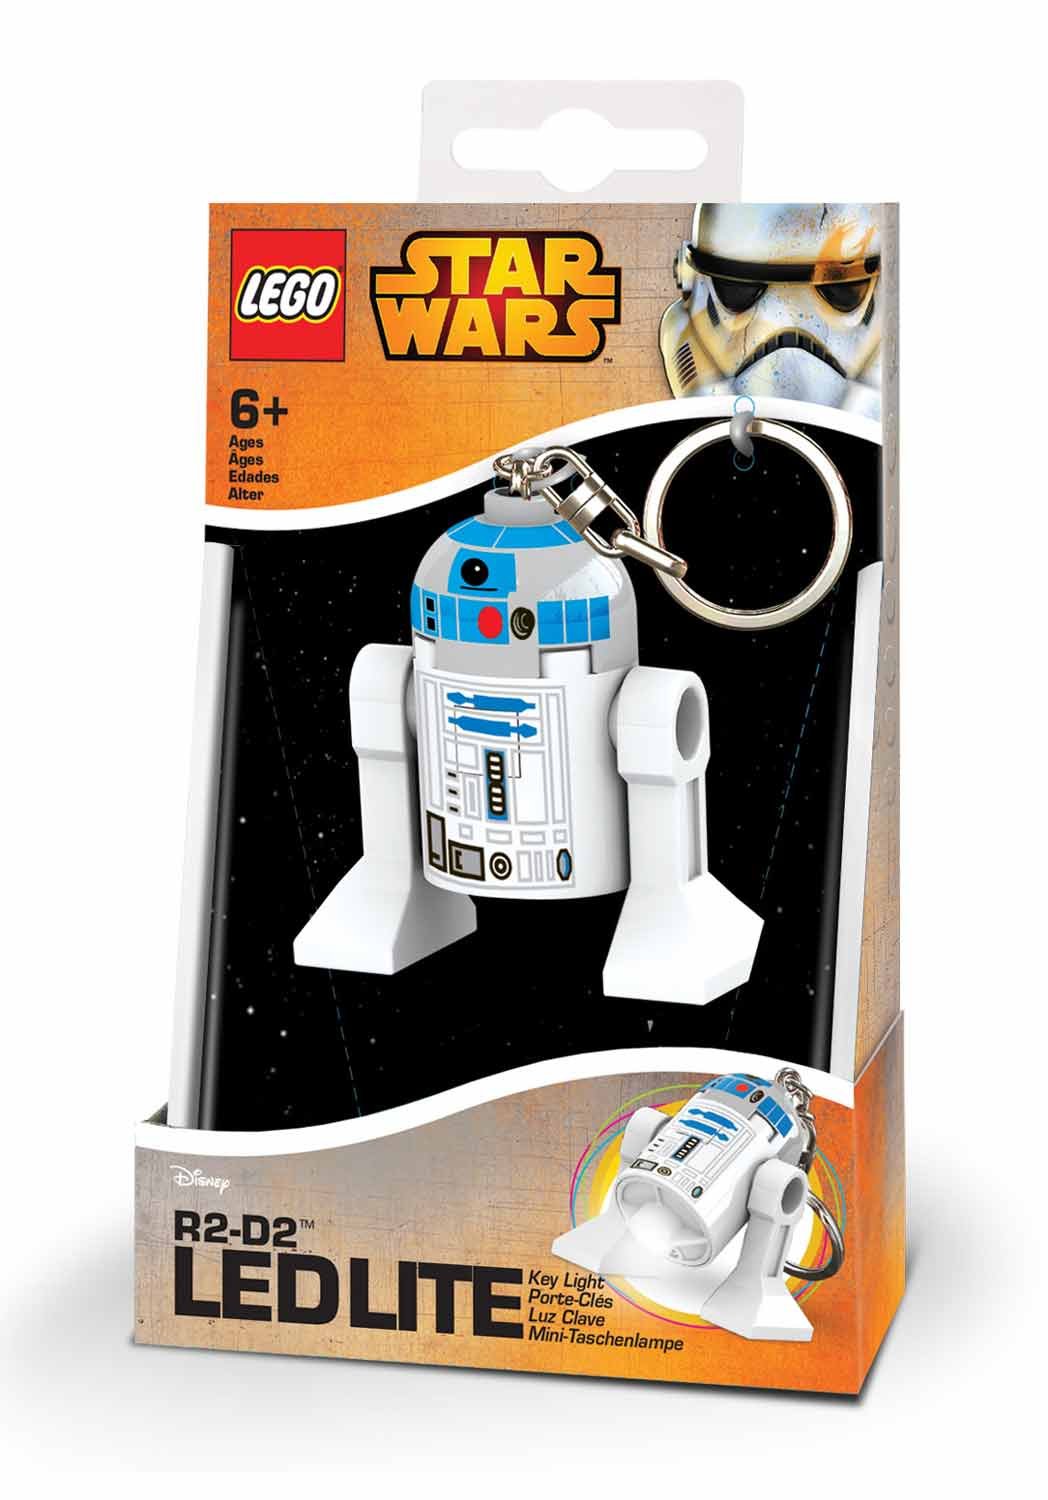 Lego Star Wars Mini Torch, 7.6 Cm, R2-D2